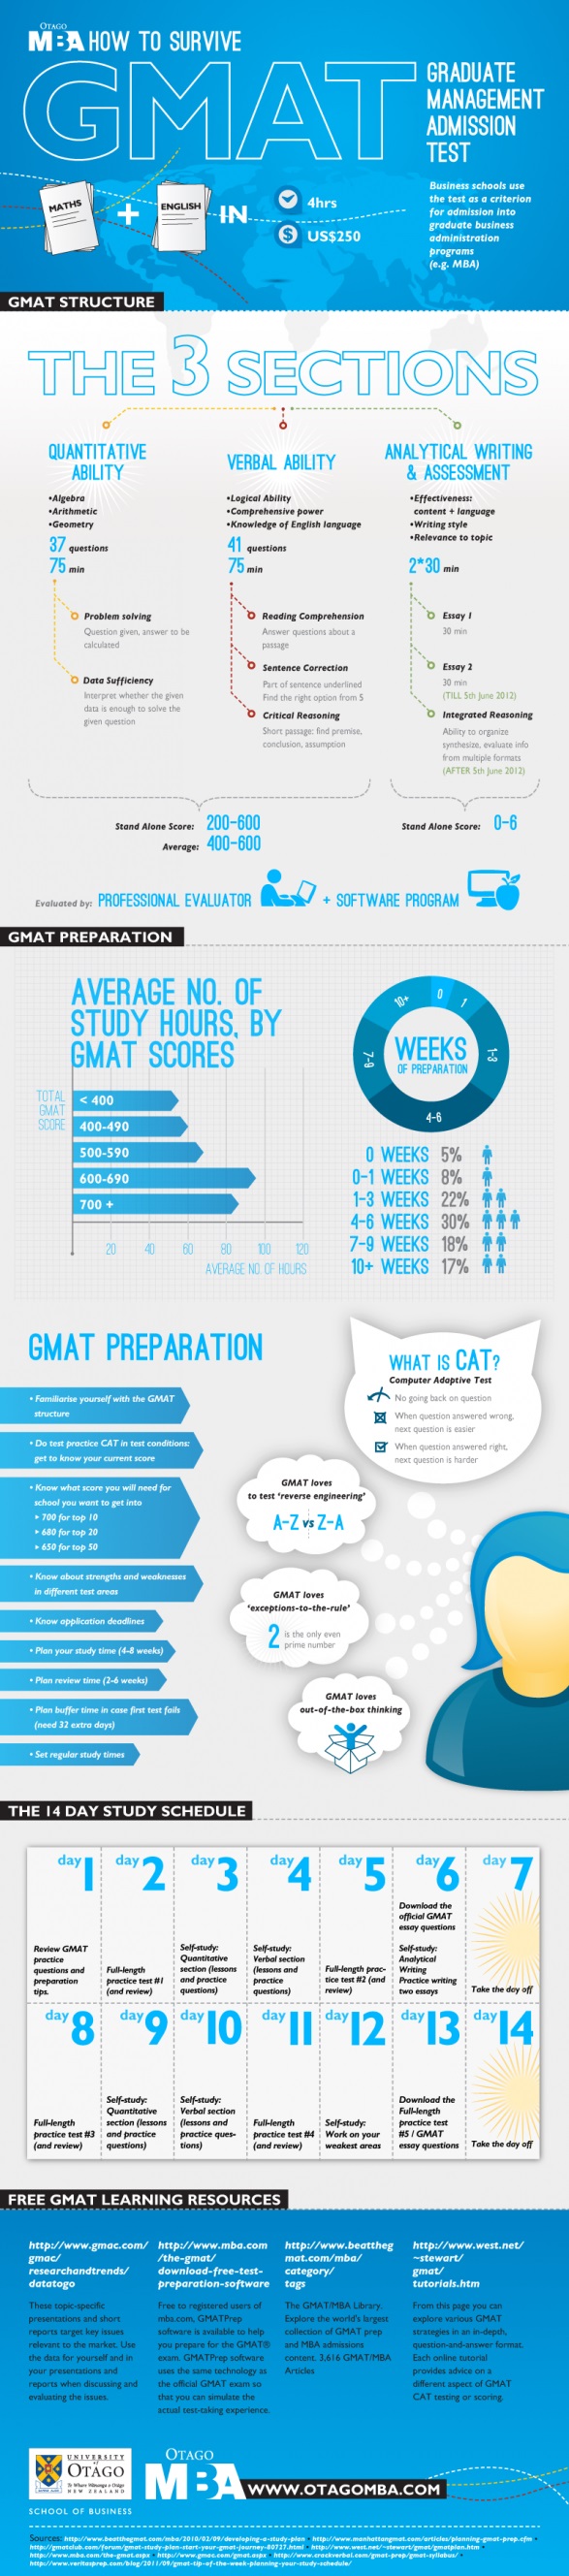 www.otago.com подготовили полезную инфографику "Как пережить экзамен GMAT"